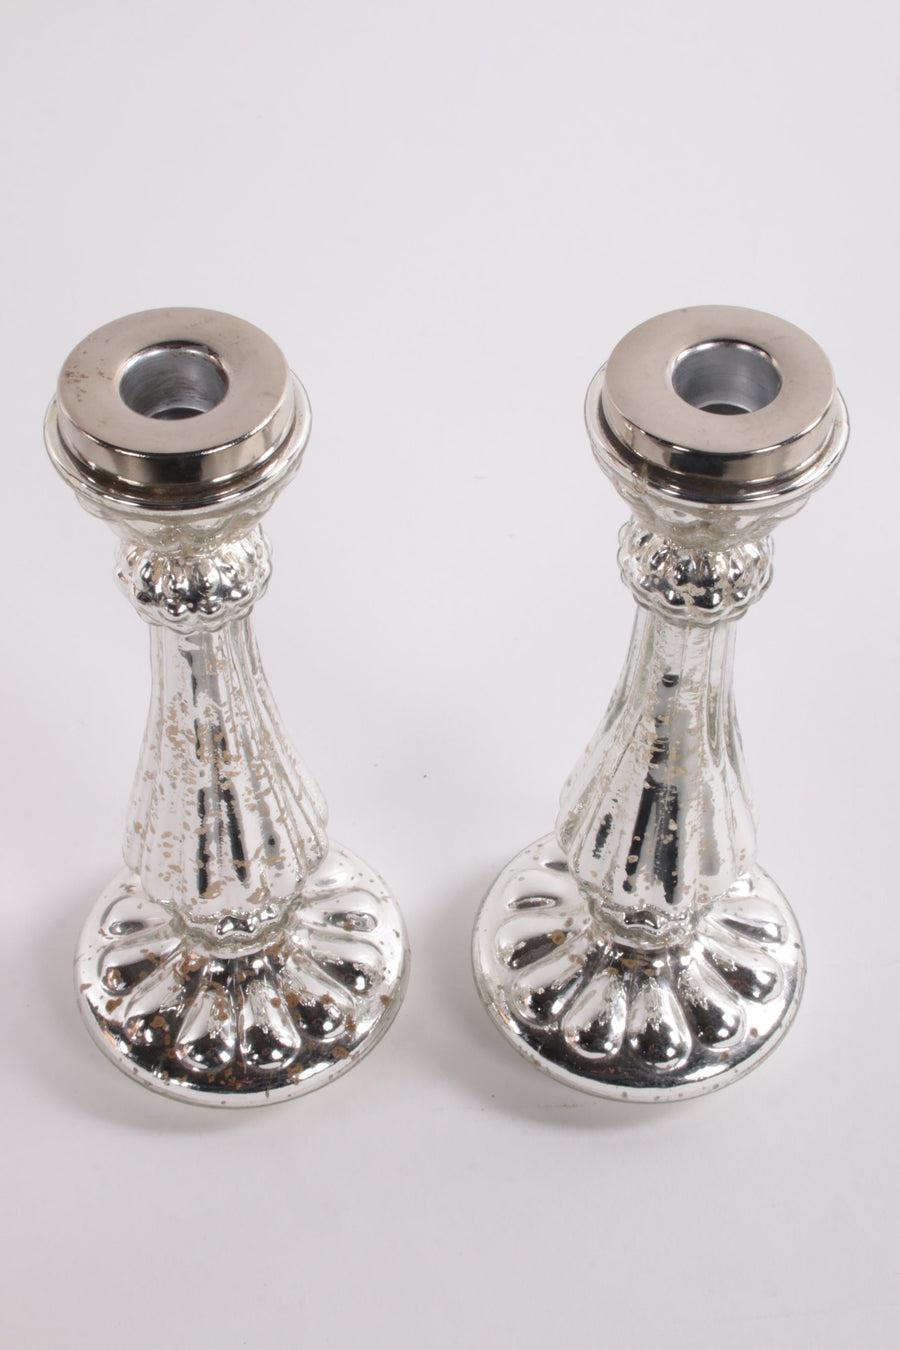  2 Silberne Glas-Kerzenleuchter

Zusätzliche Informationen: 
Abmessungen: 10 B x 23 H cm 
Zeitraum: 1969
Herkunftsland: Frankreich
Zustand: Neu
